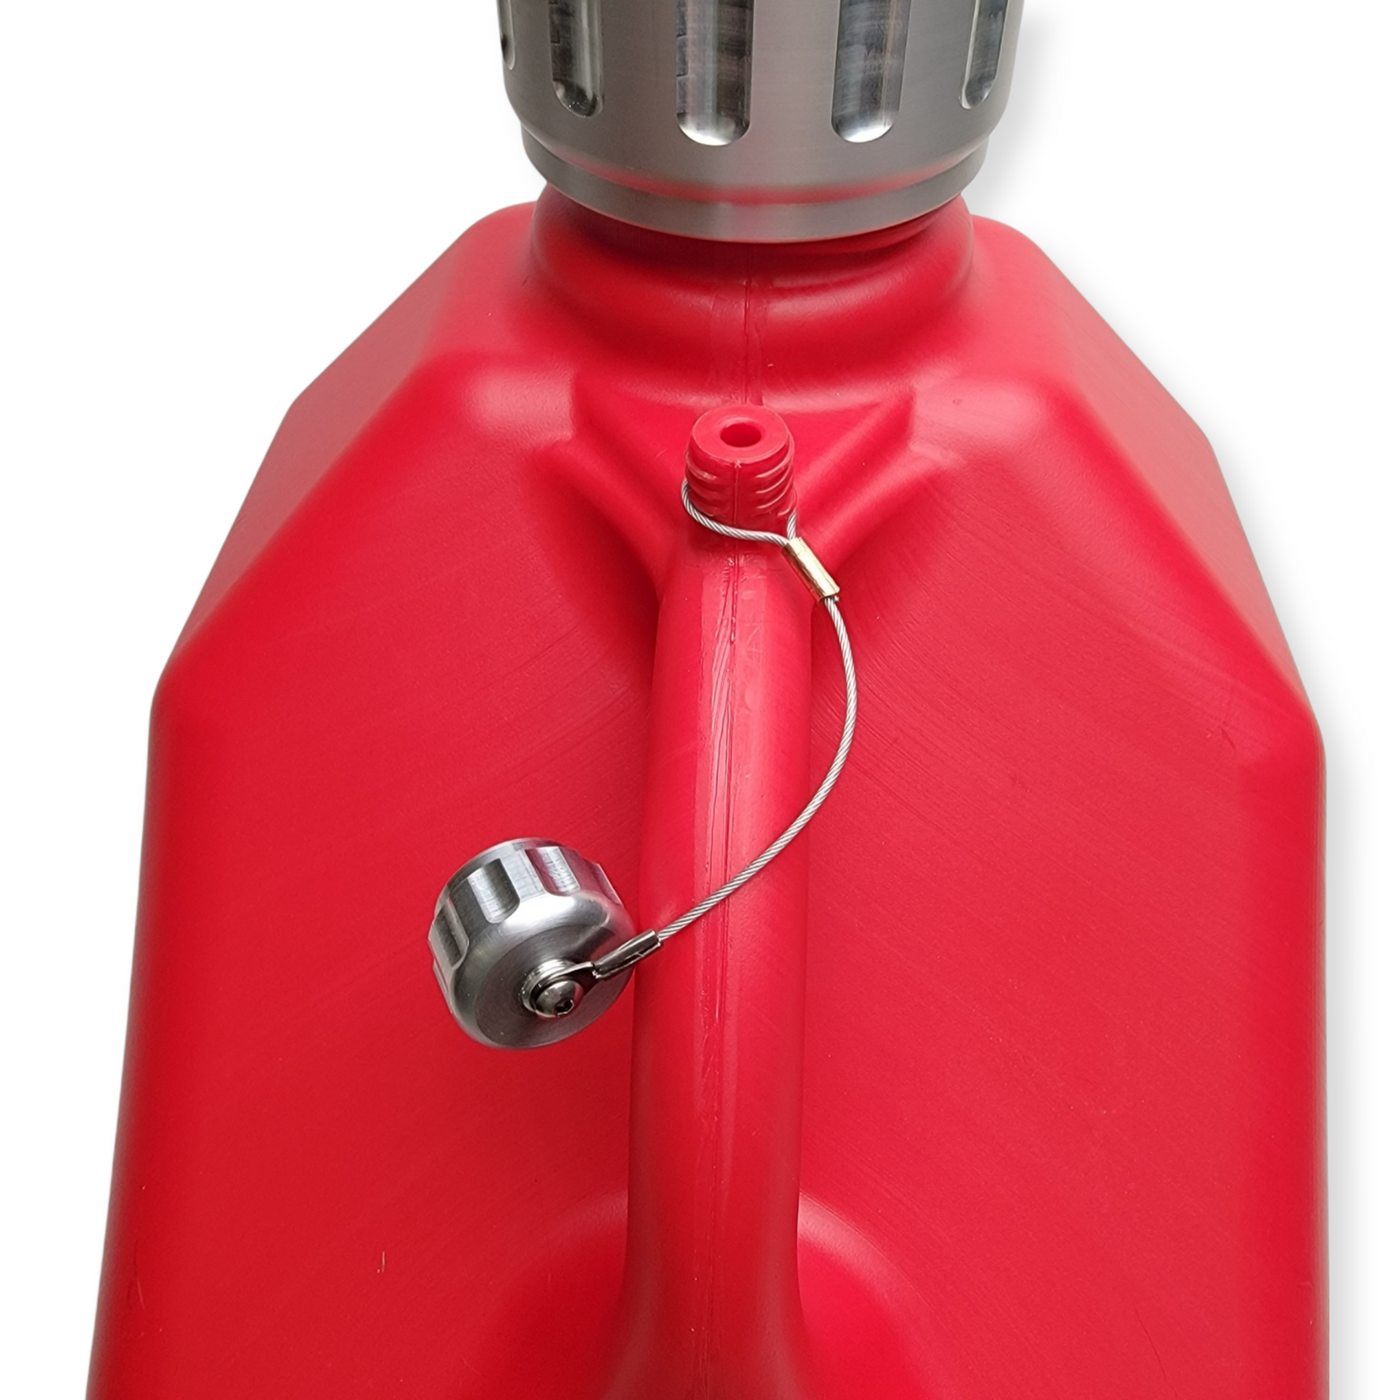 Vent Caps Bendable Gas Tank Nozzle Kit Gas Cans Cap Vent Kit for